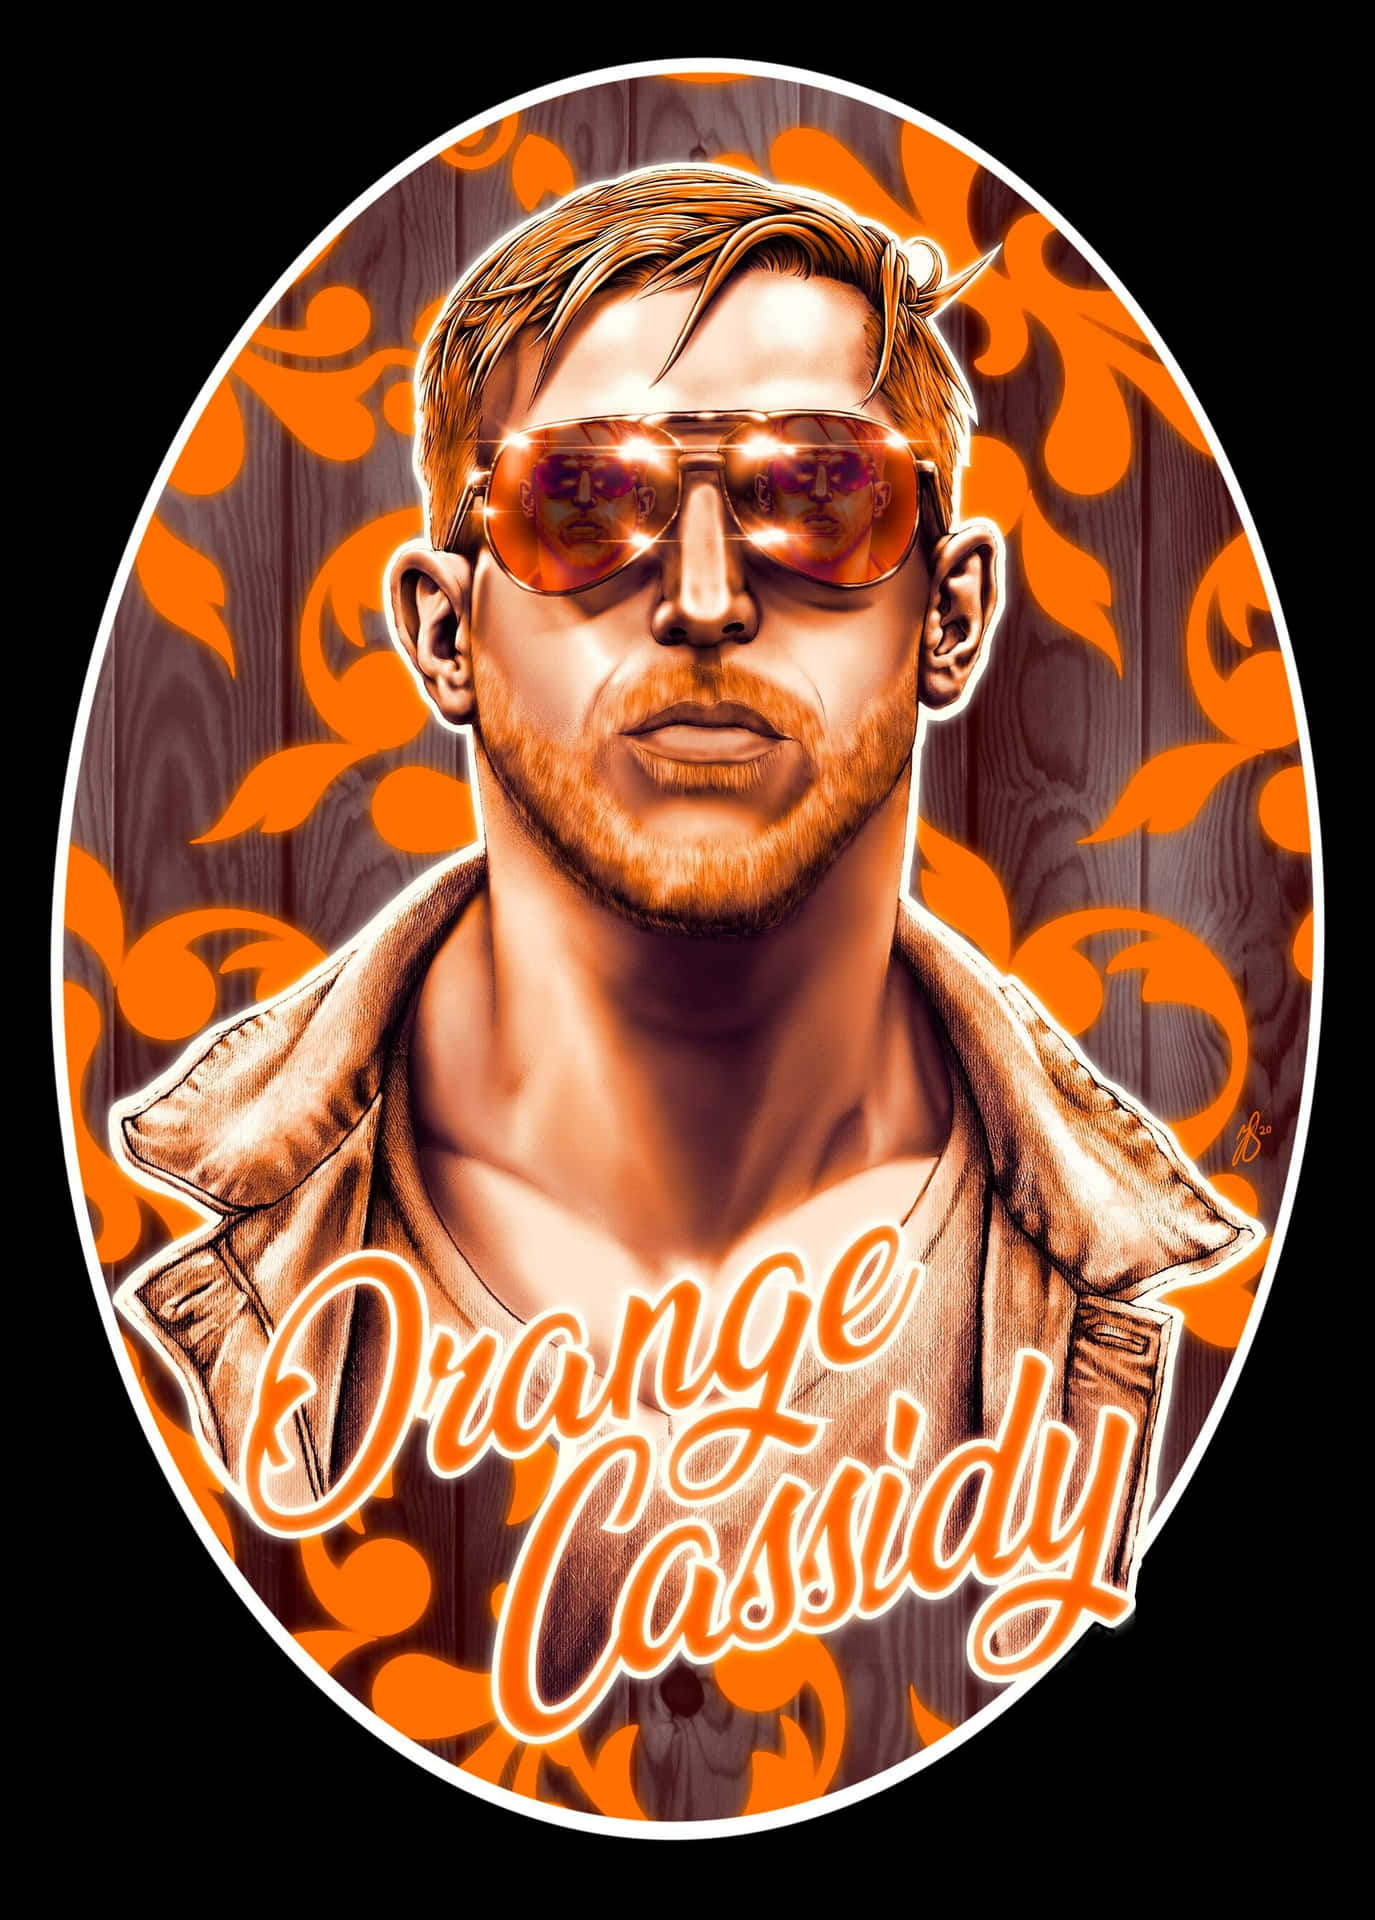 Frischgepresster Orange Cassidy Wallpaper